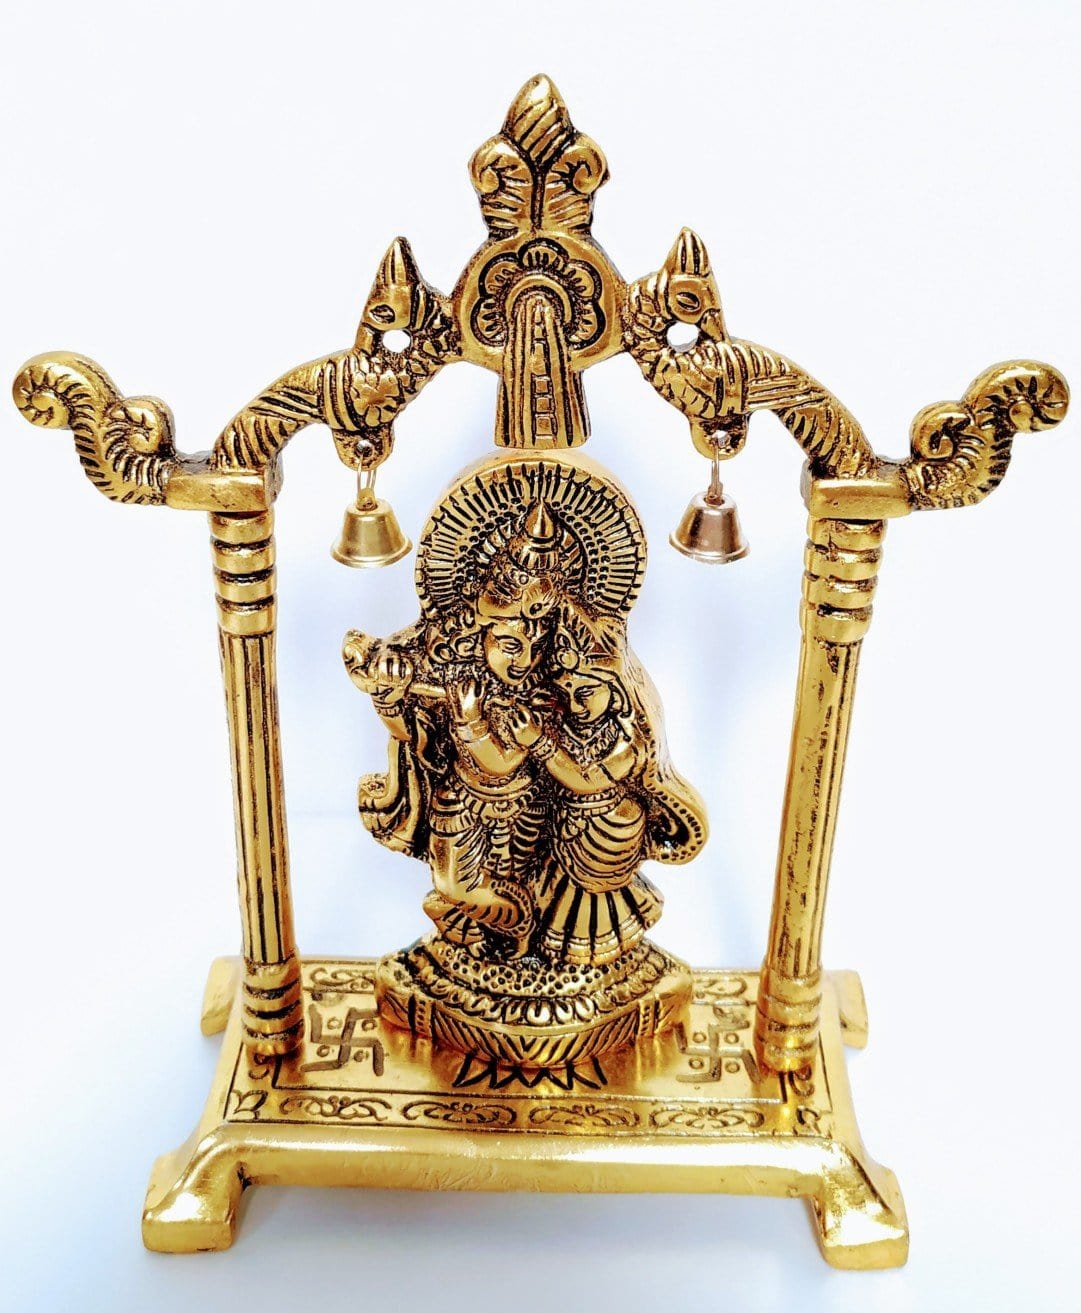 New Jaipur Handicraft Brass Showpiece Gold / Standard / Radha Krishna New Jaipur Handicraft Metal Radha Krishna statue☀📿 / God Statue👼 / Radha Krishna Idols 🛐 / Decorative Showpiece / Gifting Showpiece 🎁🎈🎀